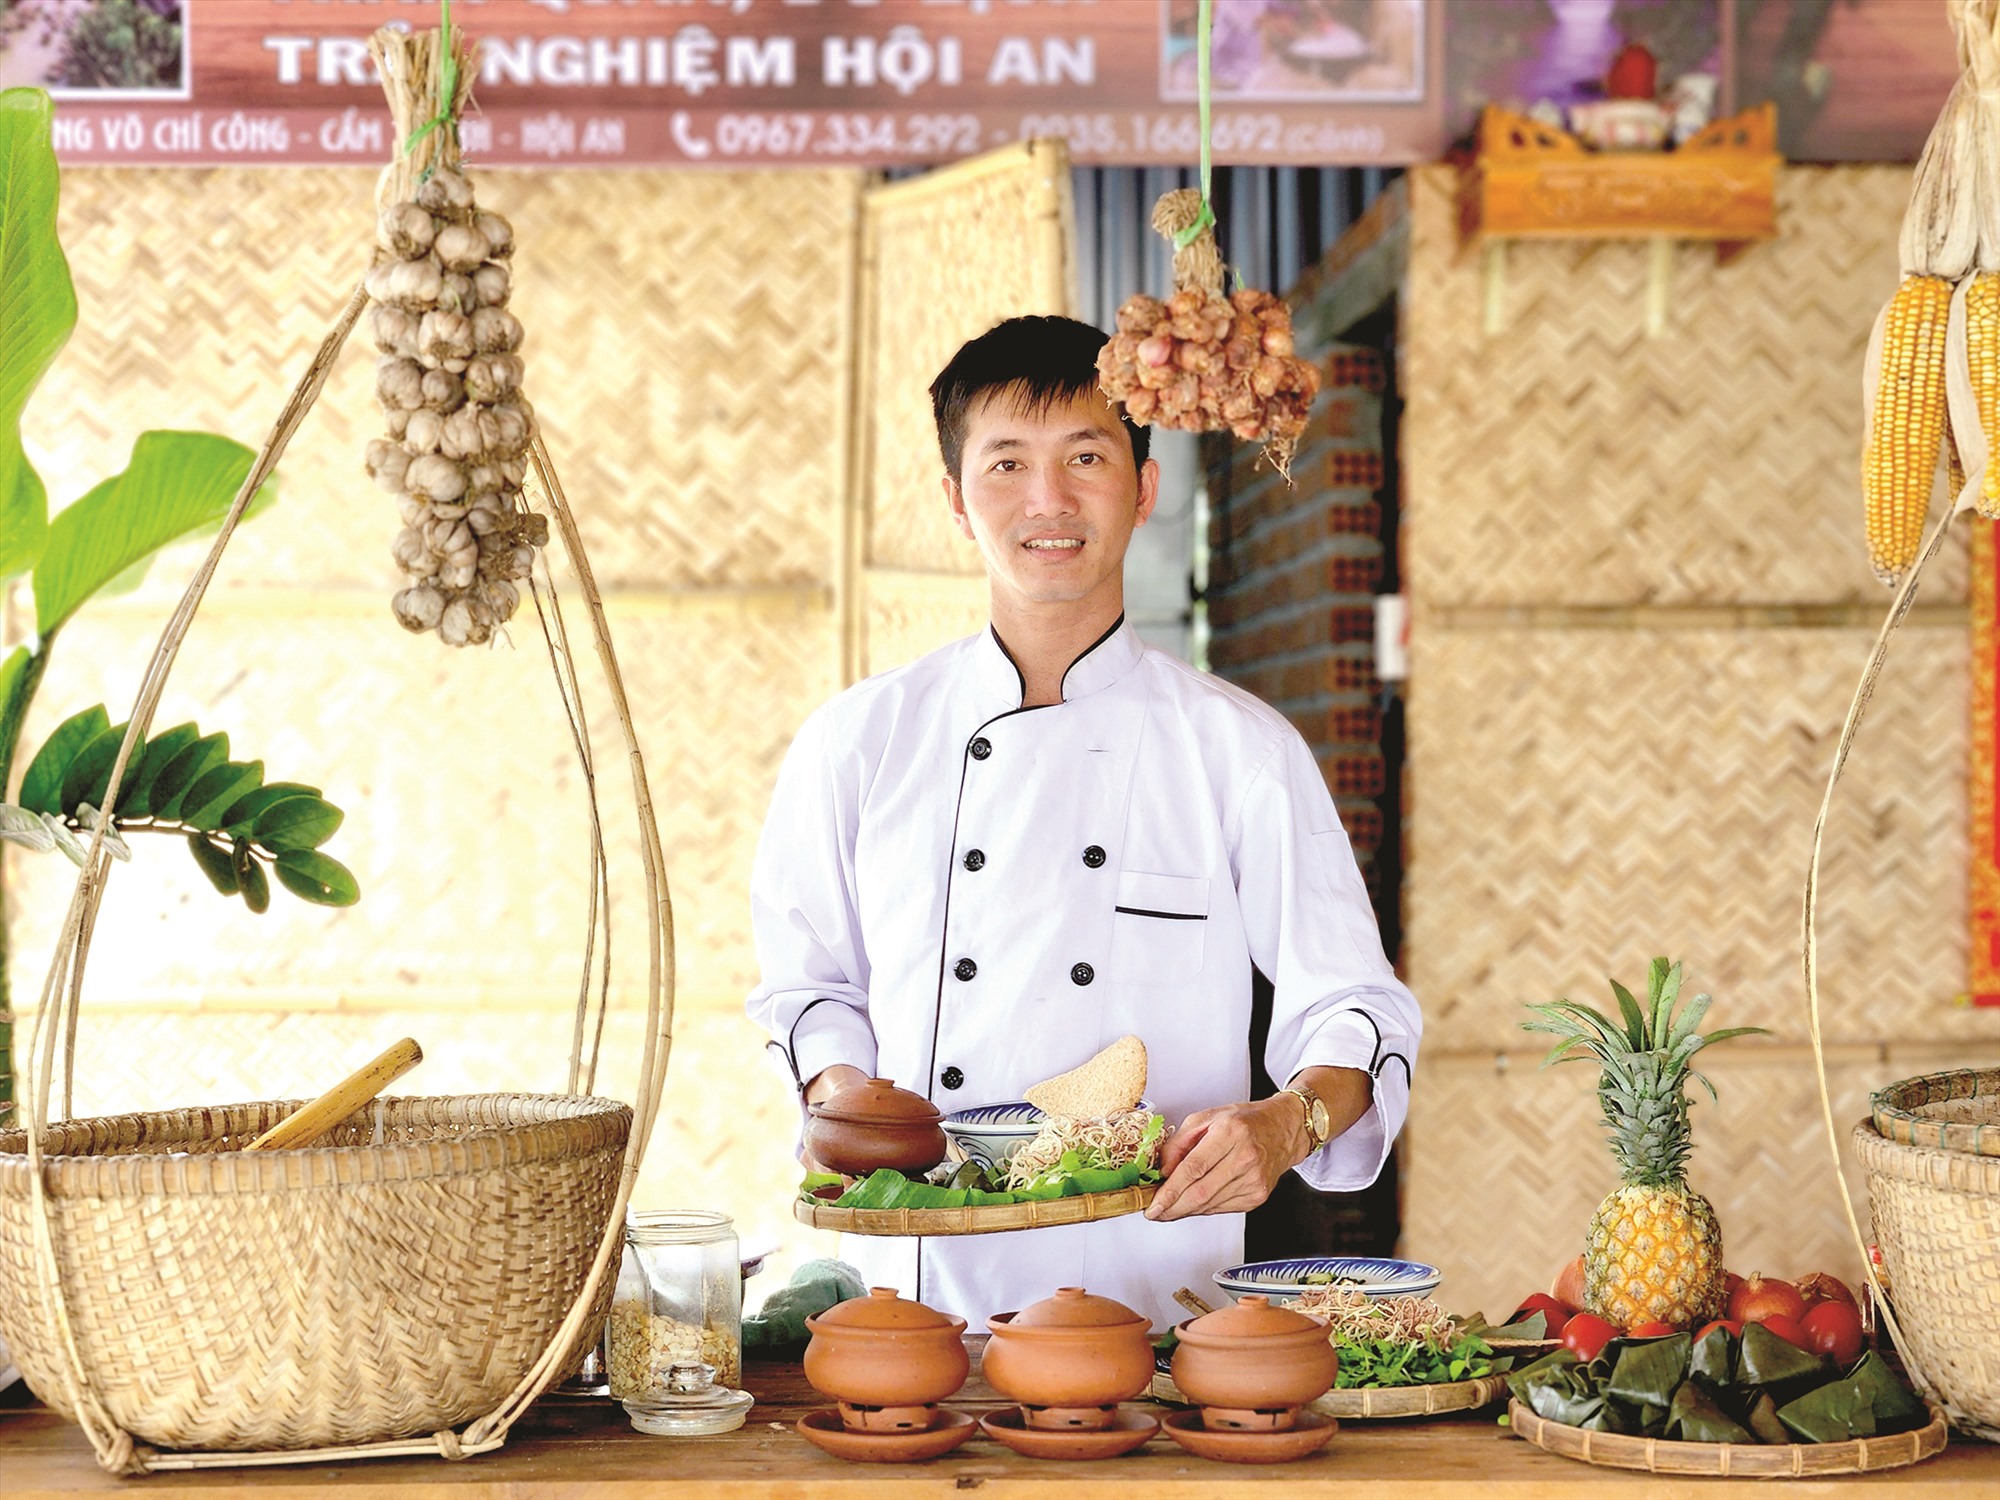 Quảng Nam: Truyền tải giá trị điểm đến bằng ẩm thực - Ảnh 3.